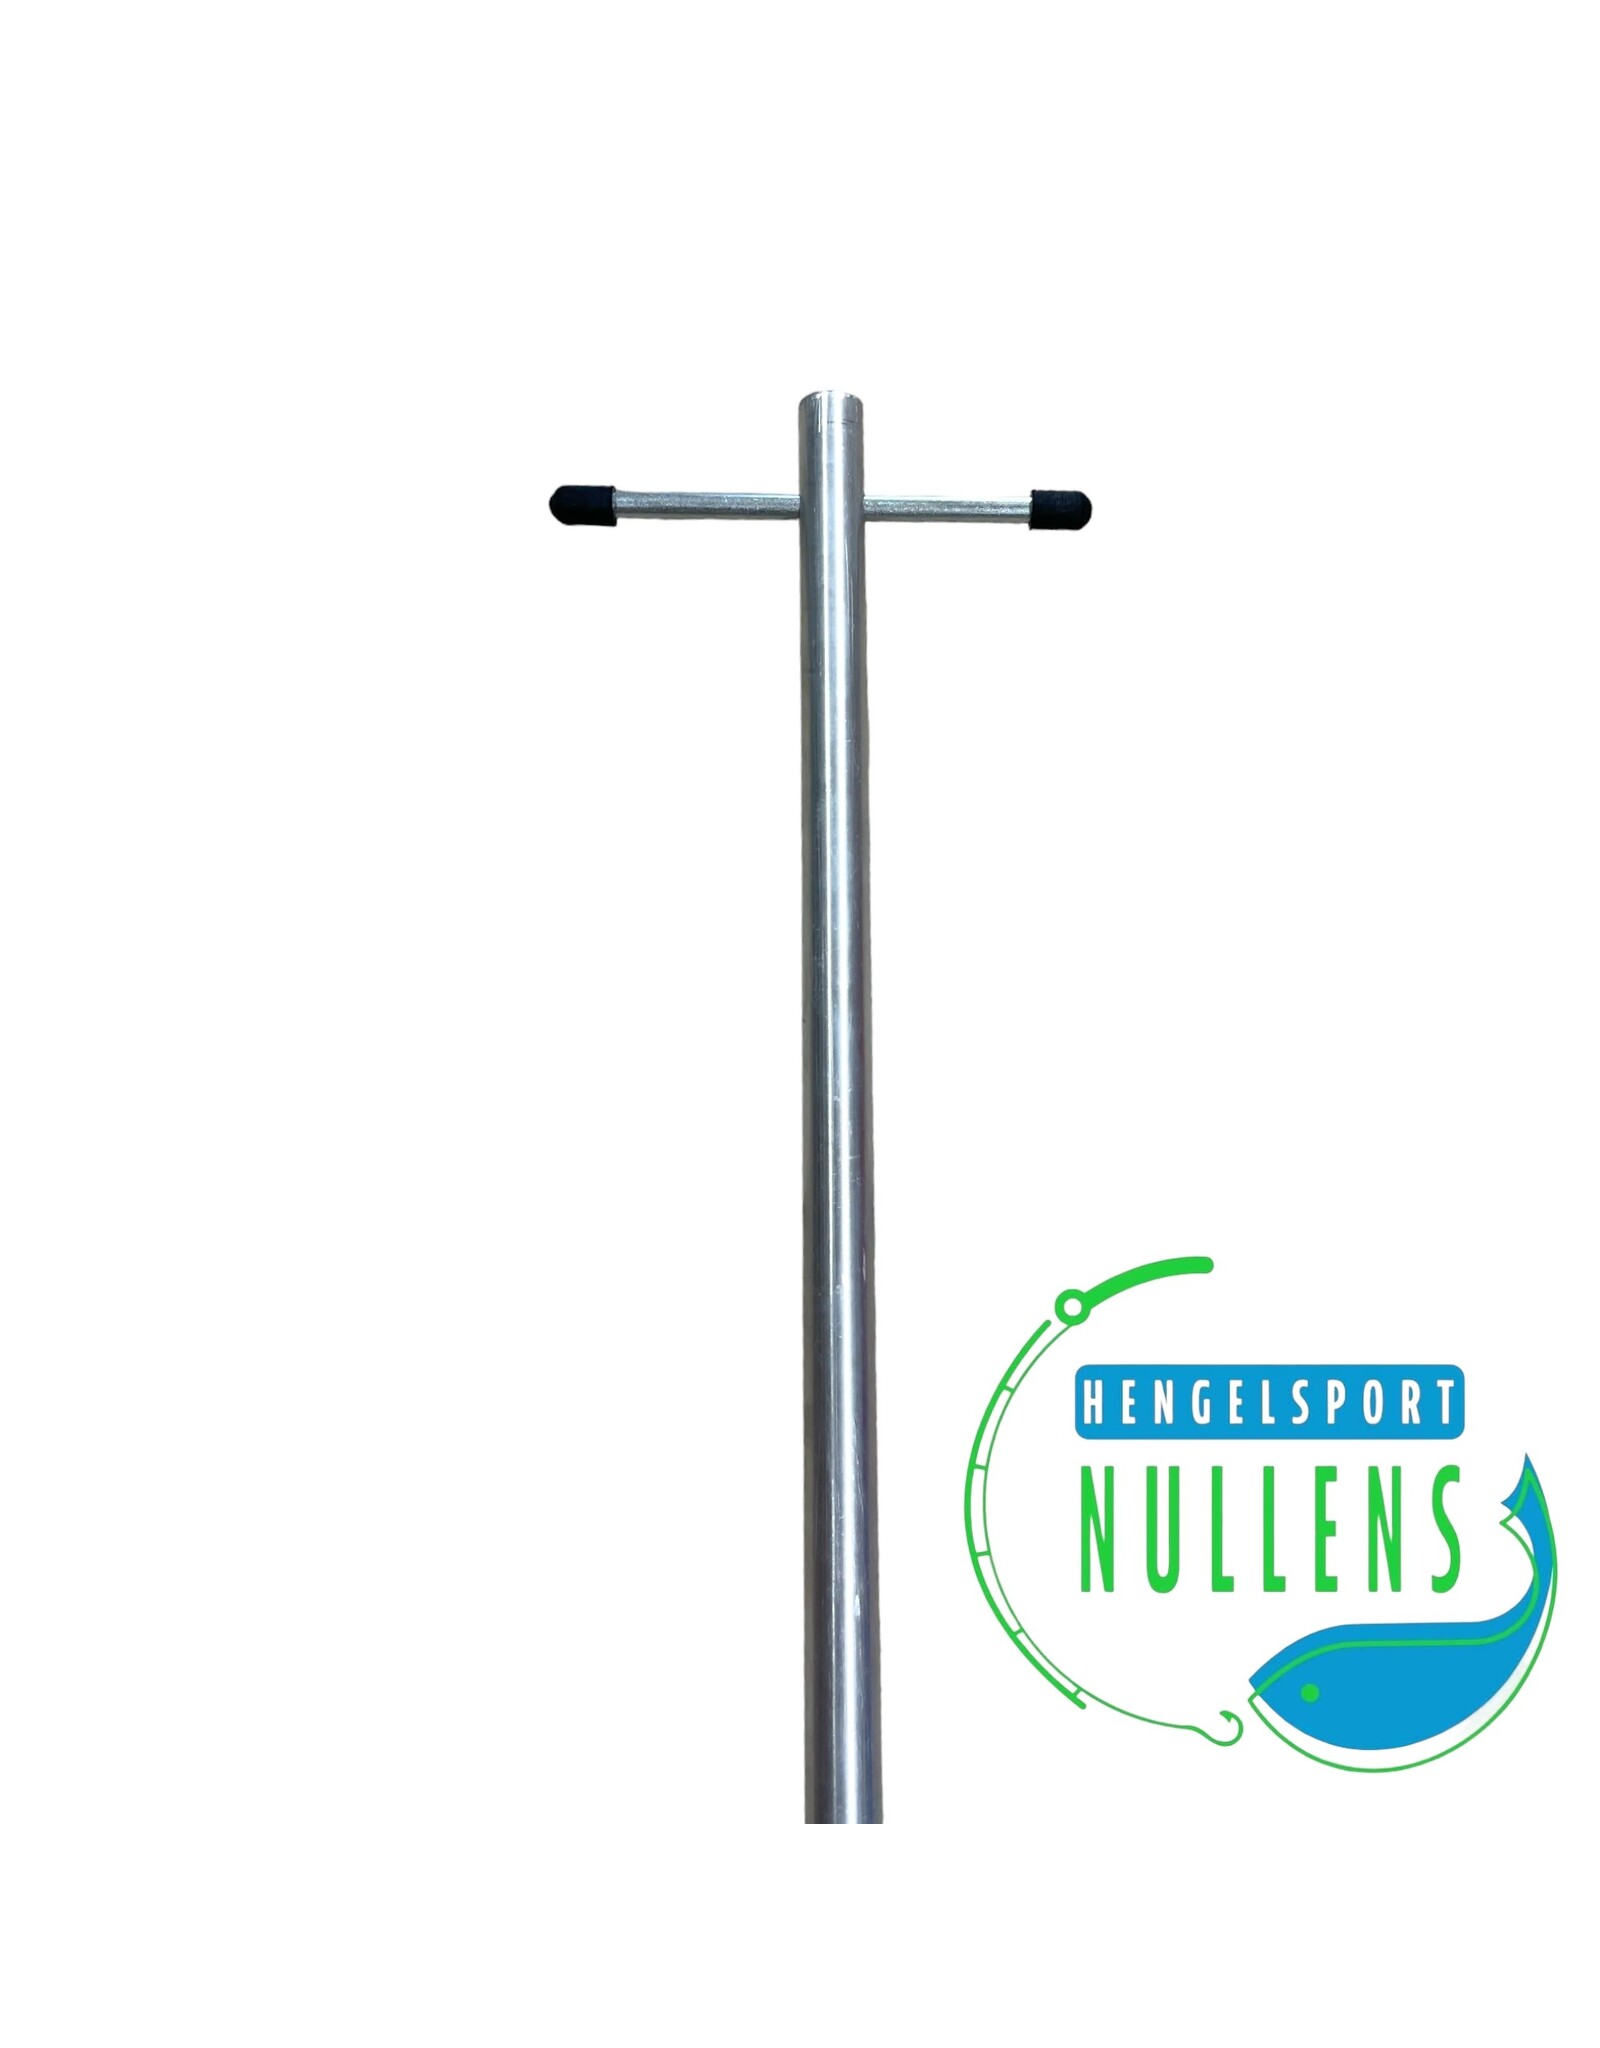 Hengelsport Nullens Volle paraplu steel 130cm diameter 19mm